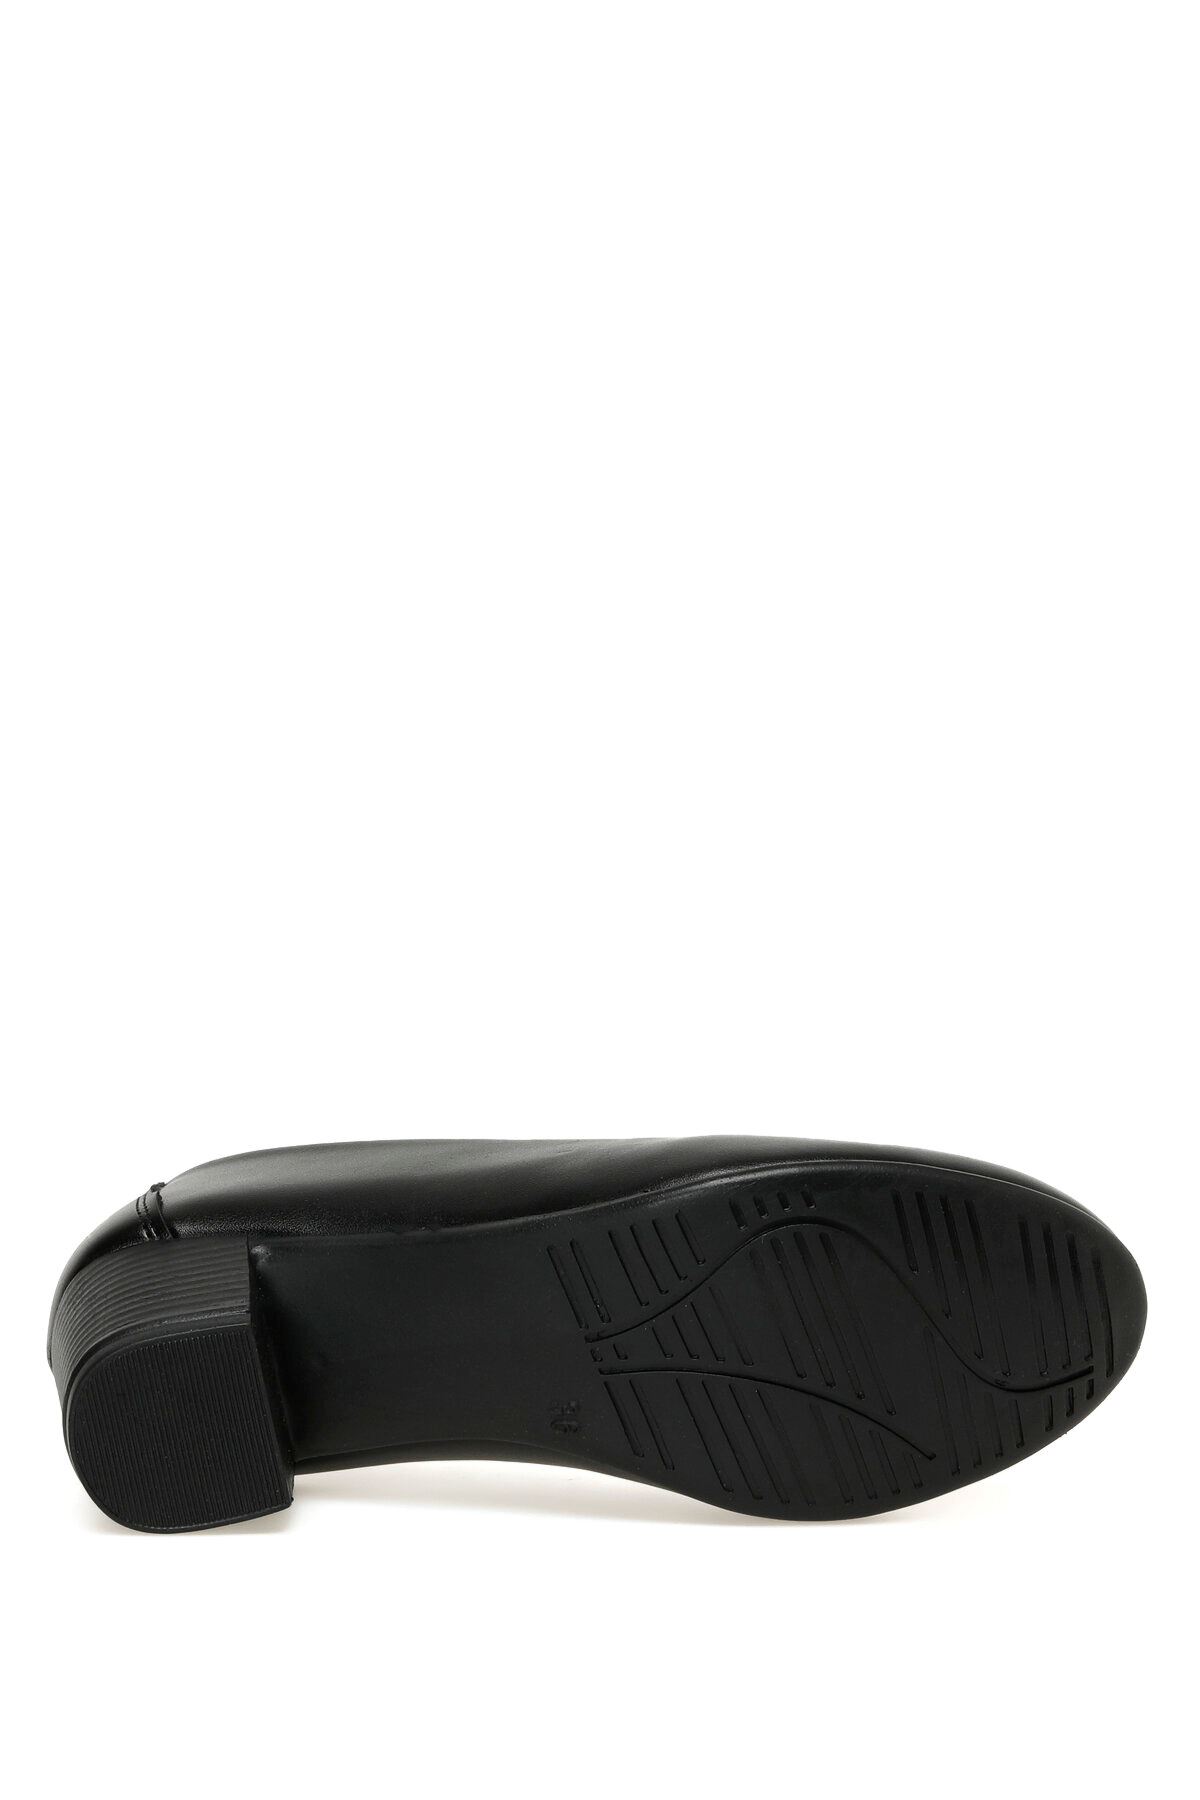 162392.Z3Fx Polaris Kadın Siyah Klasik Ayakkabı - 101339202